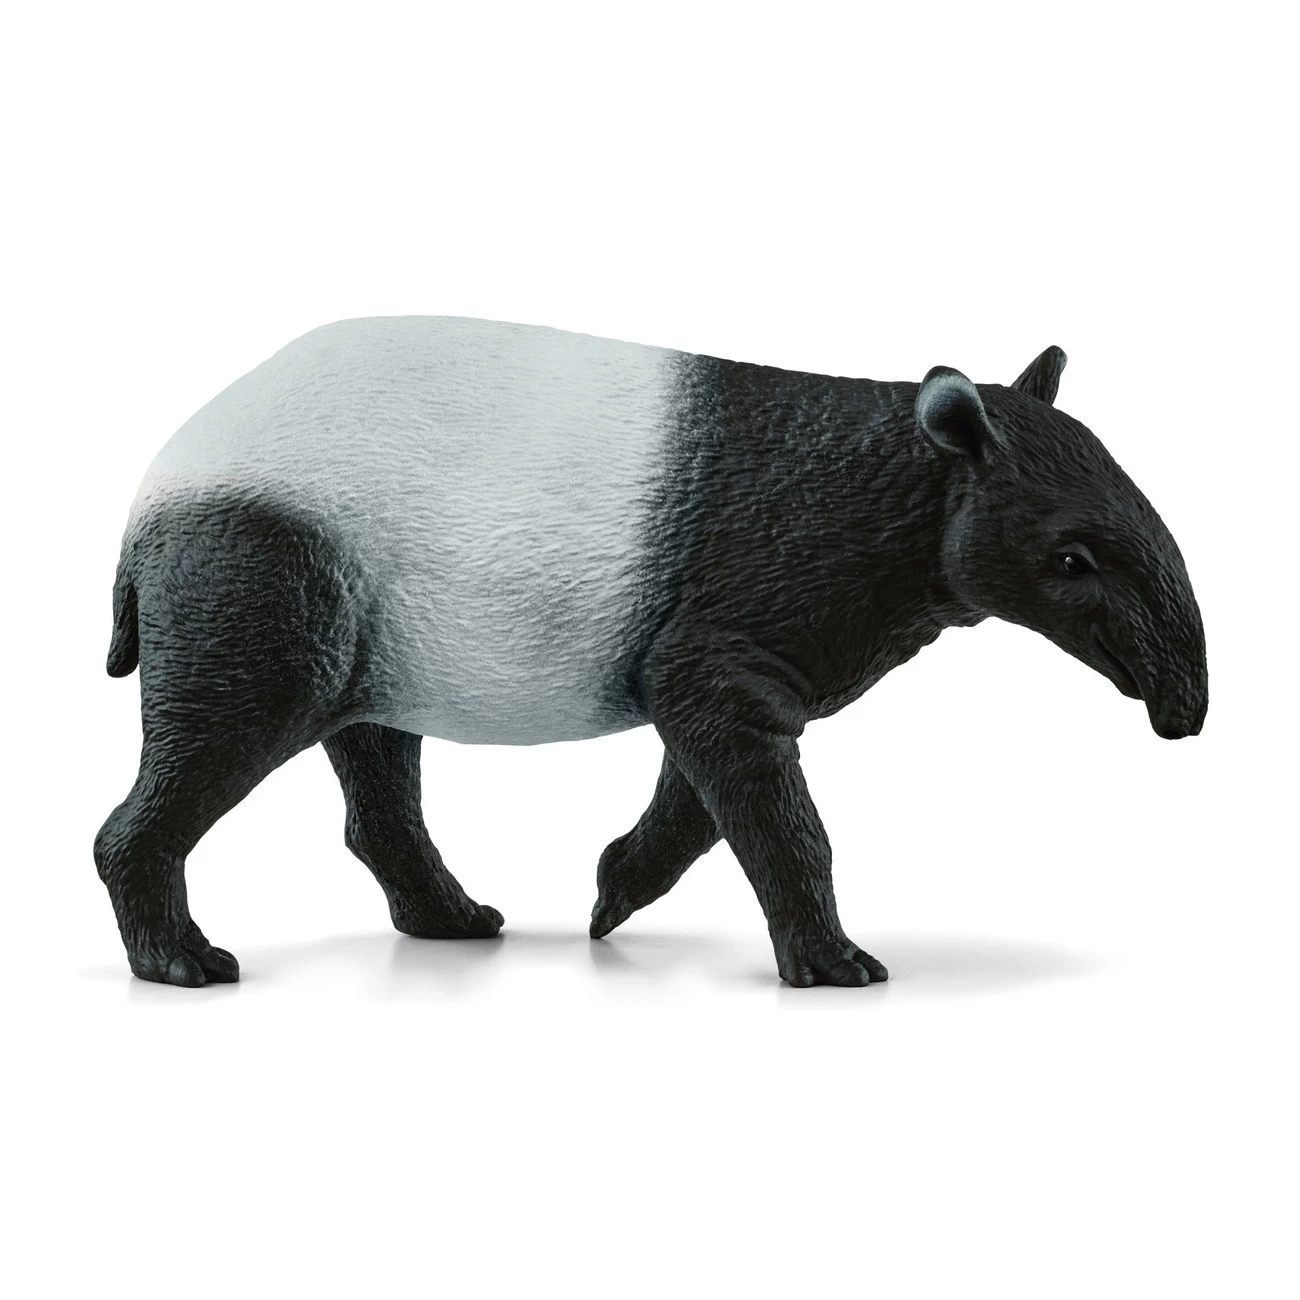 Tapir (14850)